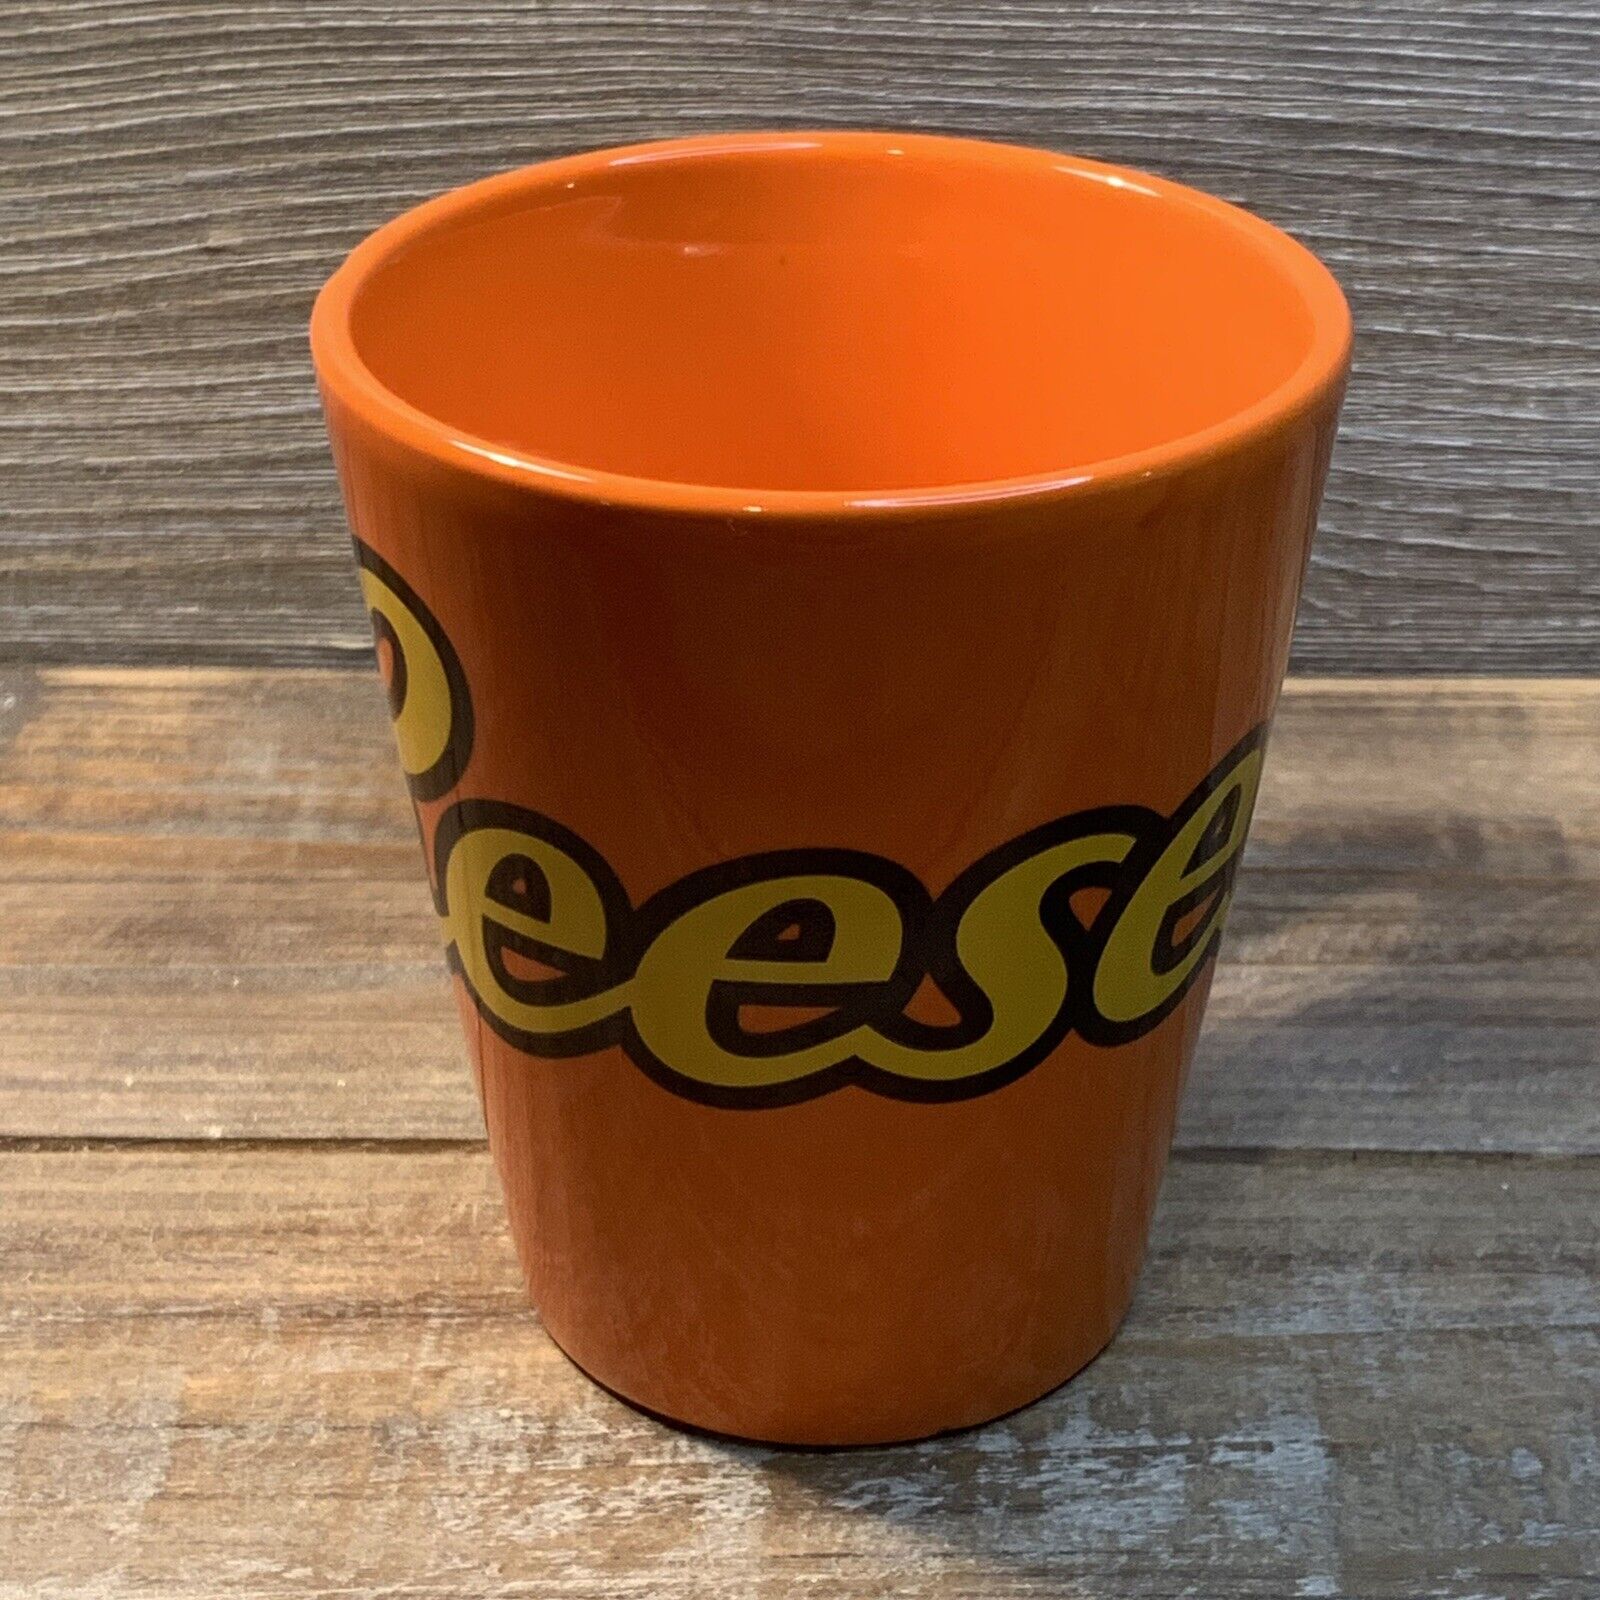 Hershey’s Chocolate World 6 Oz. Reese’s Orange Mug Coffee Cup Glass Used  (Read)